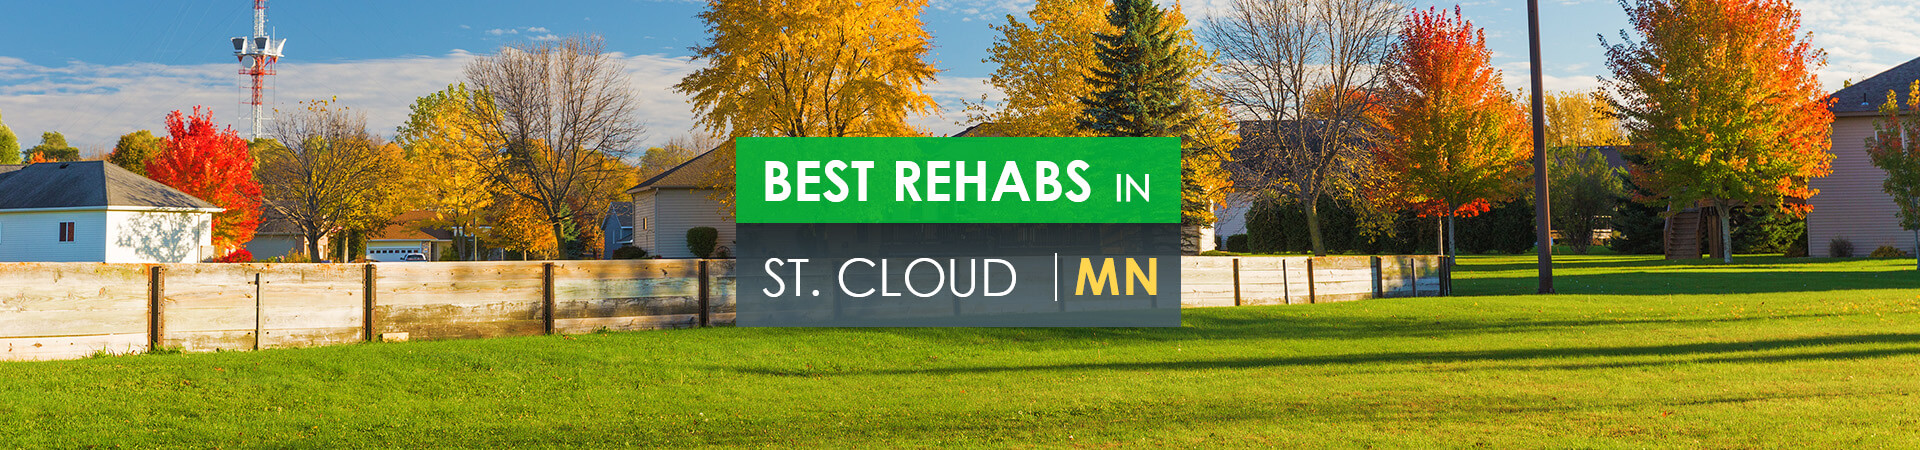 Best rehabs in St. Cloud, MN